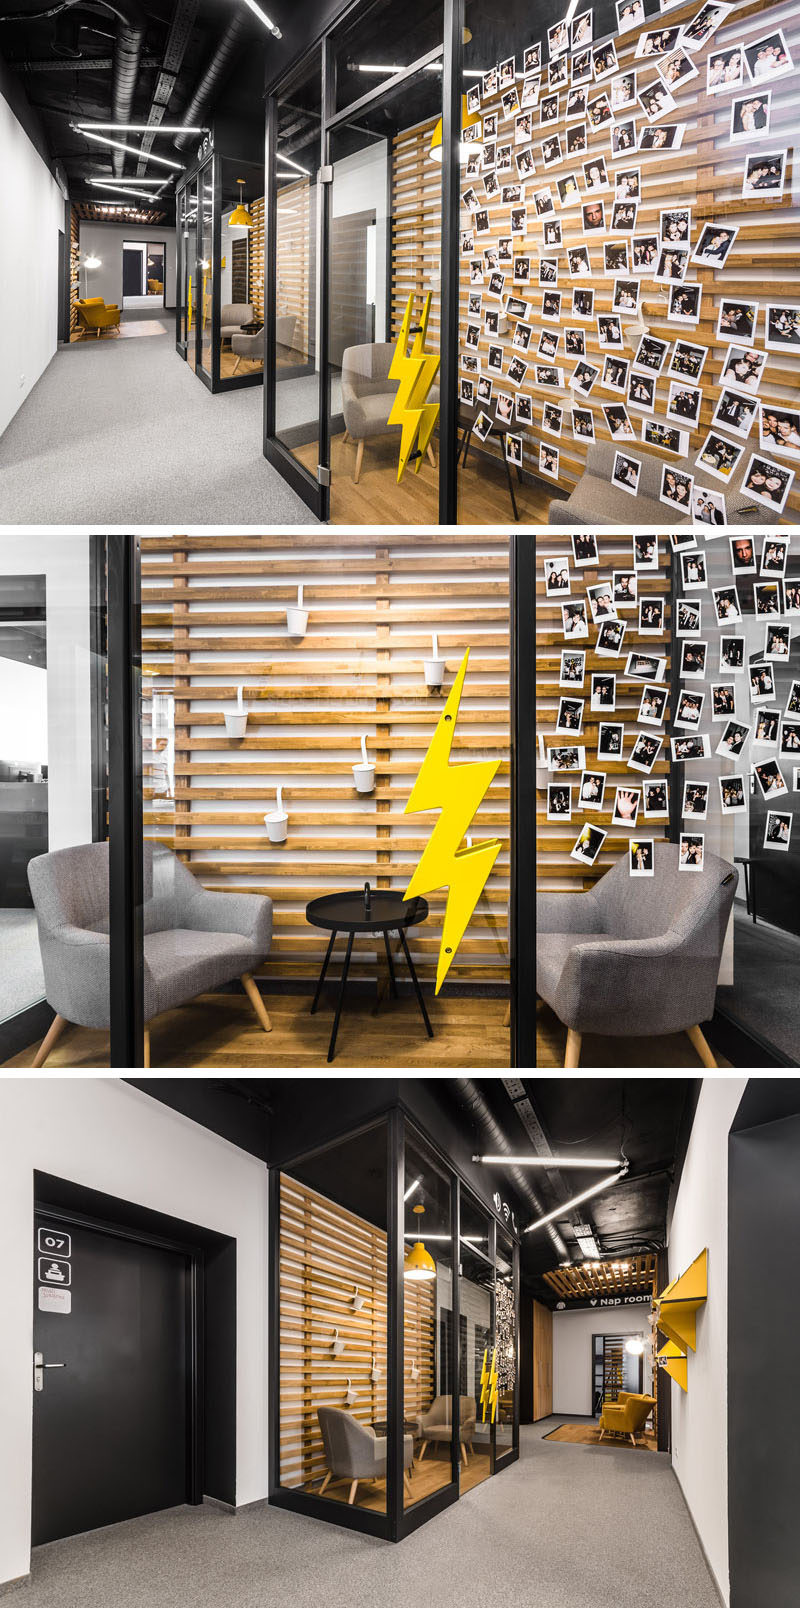 В этом современном офисе застекленные комнаты позволяют прикрепить к стеклу забавные произведения искусства или фотографии, а деревянные планки и пол соответствуют другим зонам отдыха в коридоре.